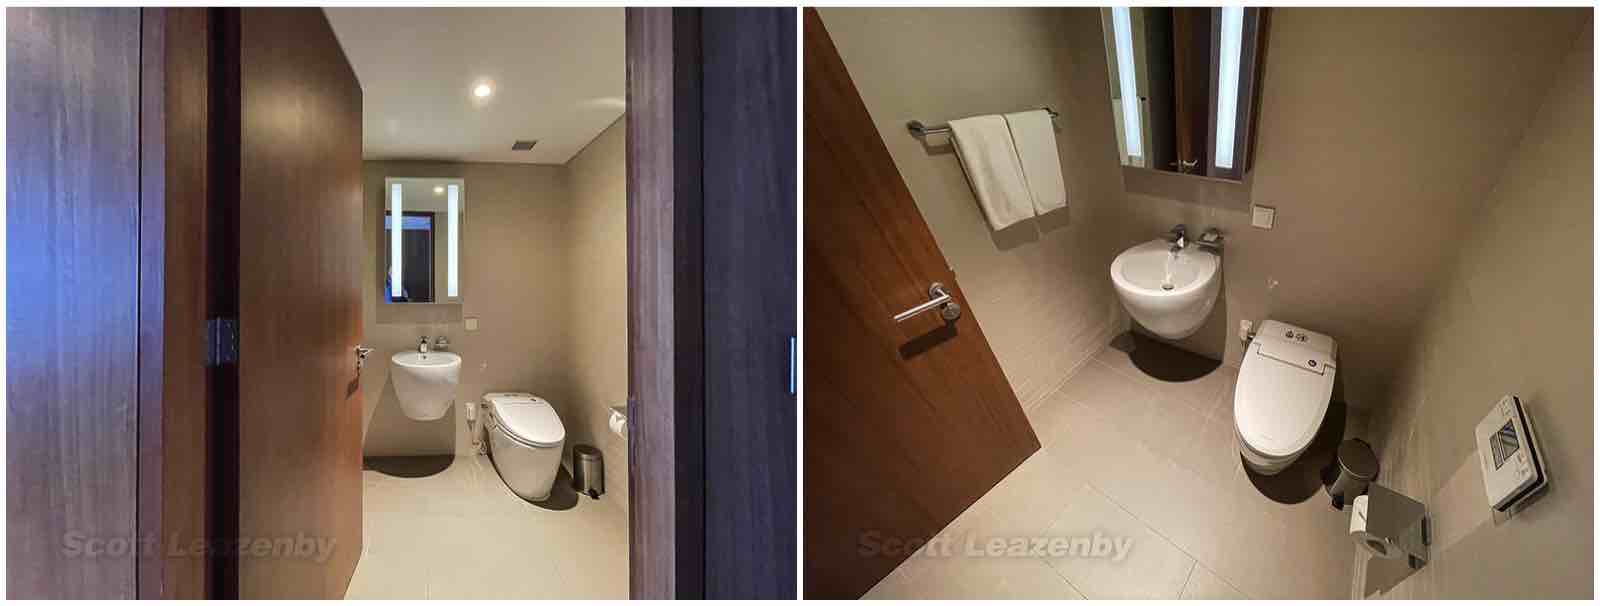 Incheon Grand Hyatt suite second bathroom